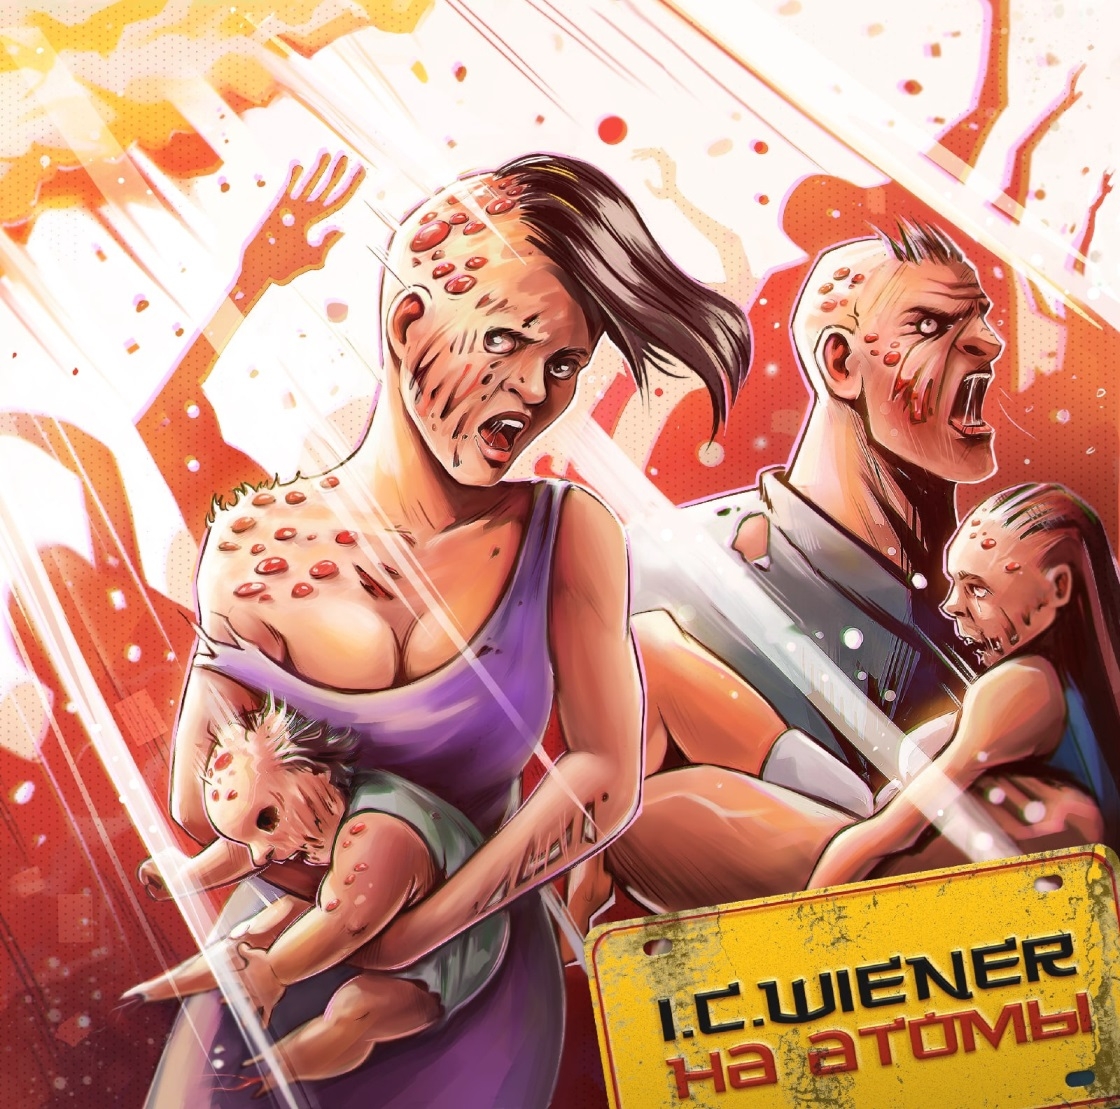  Картинка Новый макси-сингл от группы I.C.Wiener